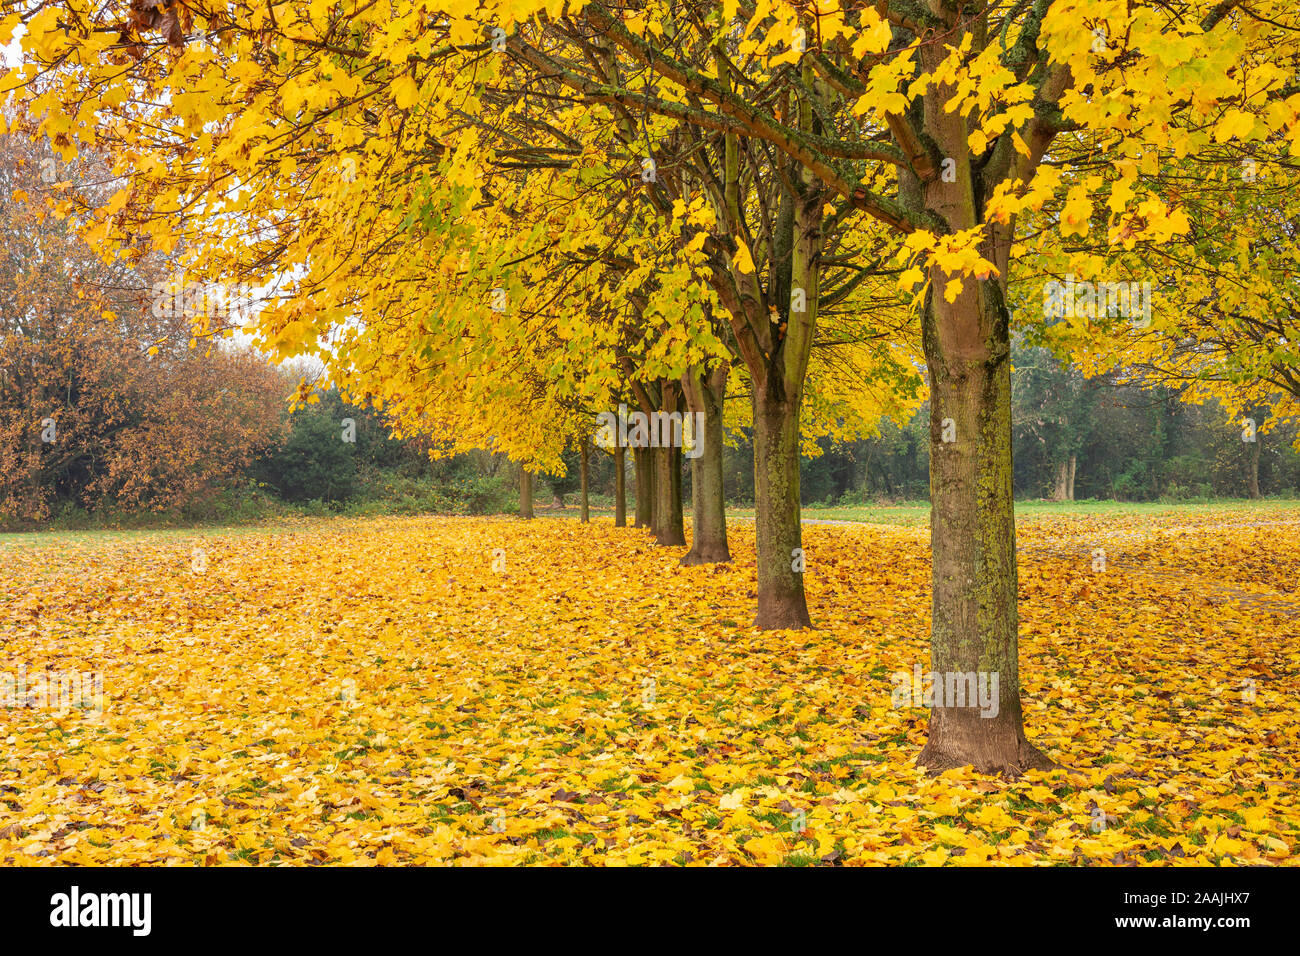 Hojas de Otoño Otoño otoño los árboles del Reino Unido uk avenida de árboles con hojas de otoño hilera de árboles con colores de otoño Inglaterra GB Europa Foto de stock